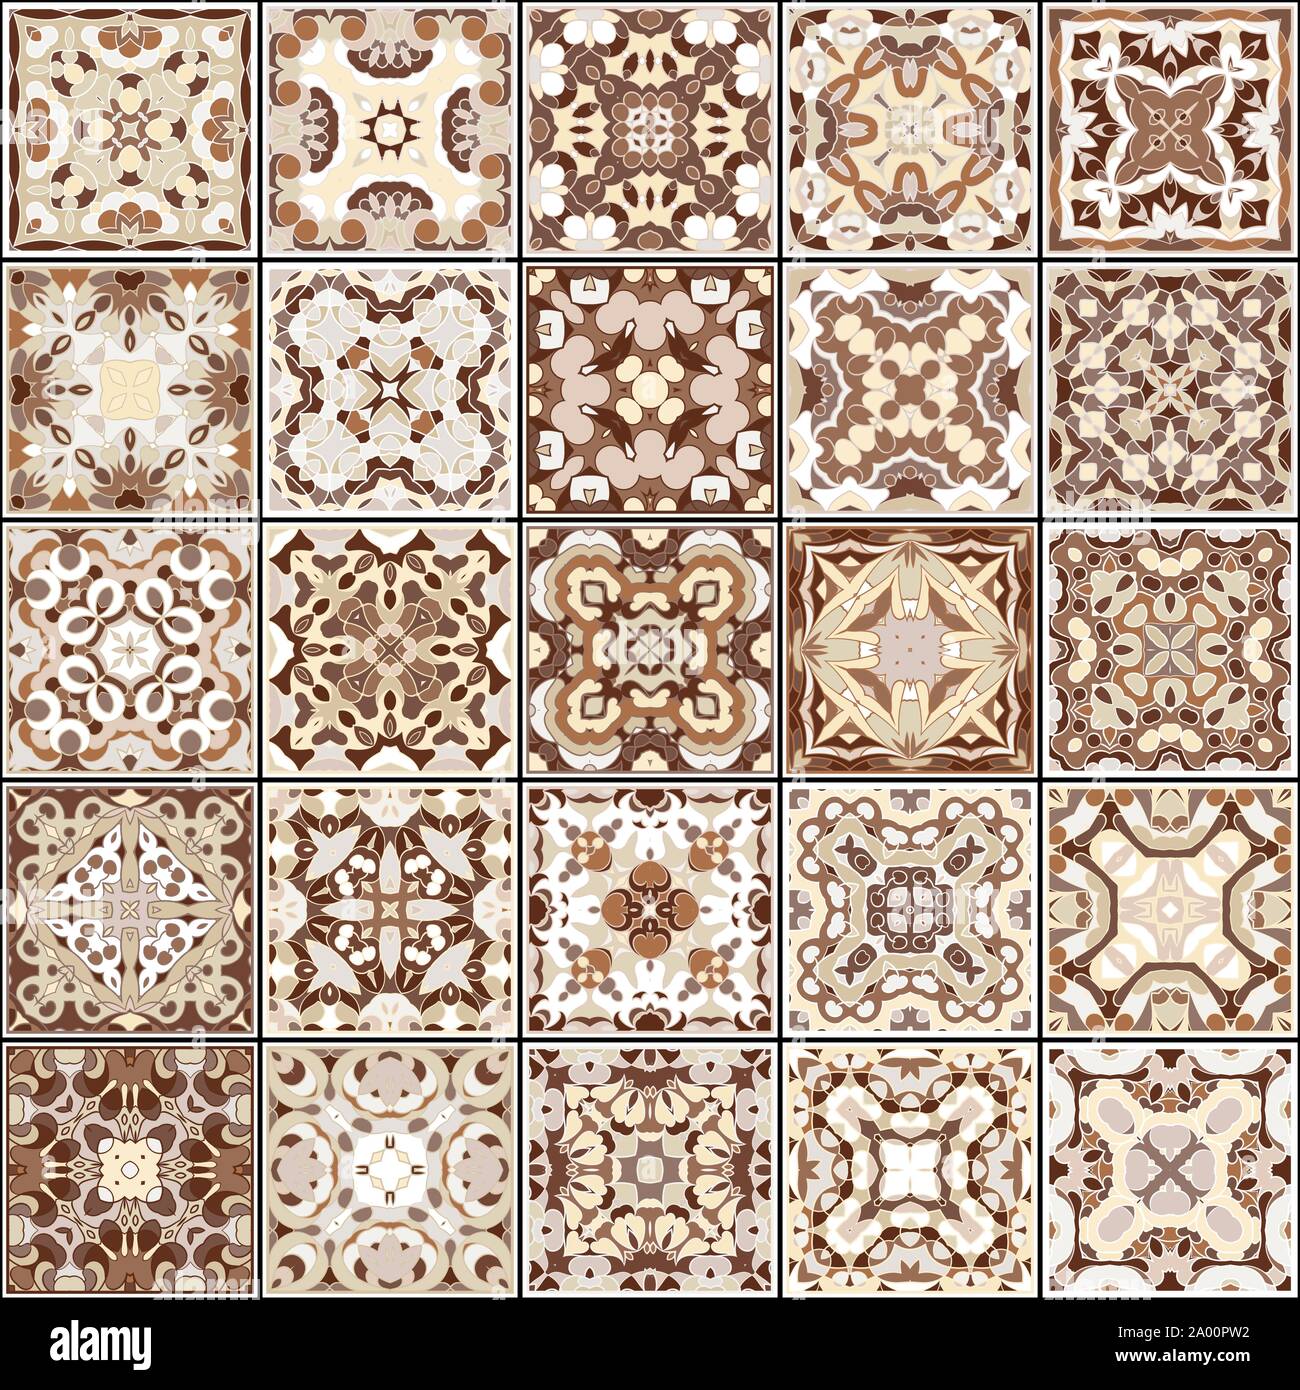 Eine Sammlung von Keramikfliesen in Braun retro Farben. Eine Reihe von quadratischen Muster im ethnischen Stil. Vector Illustration. Stock Vektor